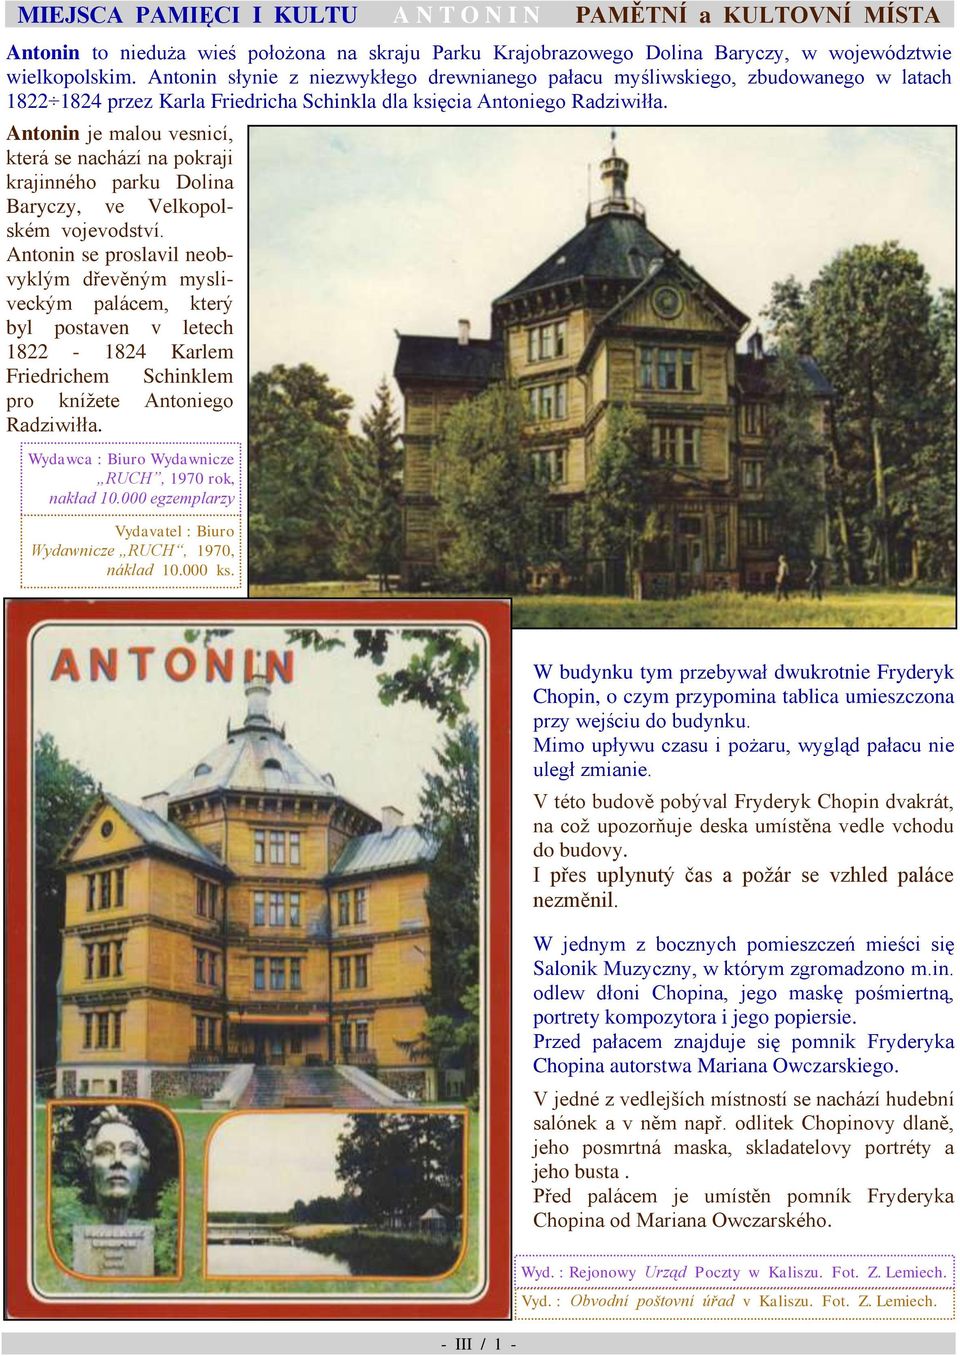 krajinného parku Dolina Baryczy, ve Velkopolském vojevodství Antonin se proslavil neobvyklým dřevěným mysliveckým palácem, který byl postaven v letech 1822-1824 Karlem Friedrichem Schinklem pro